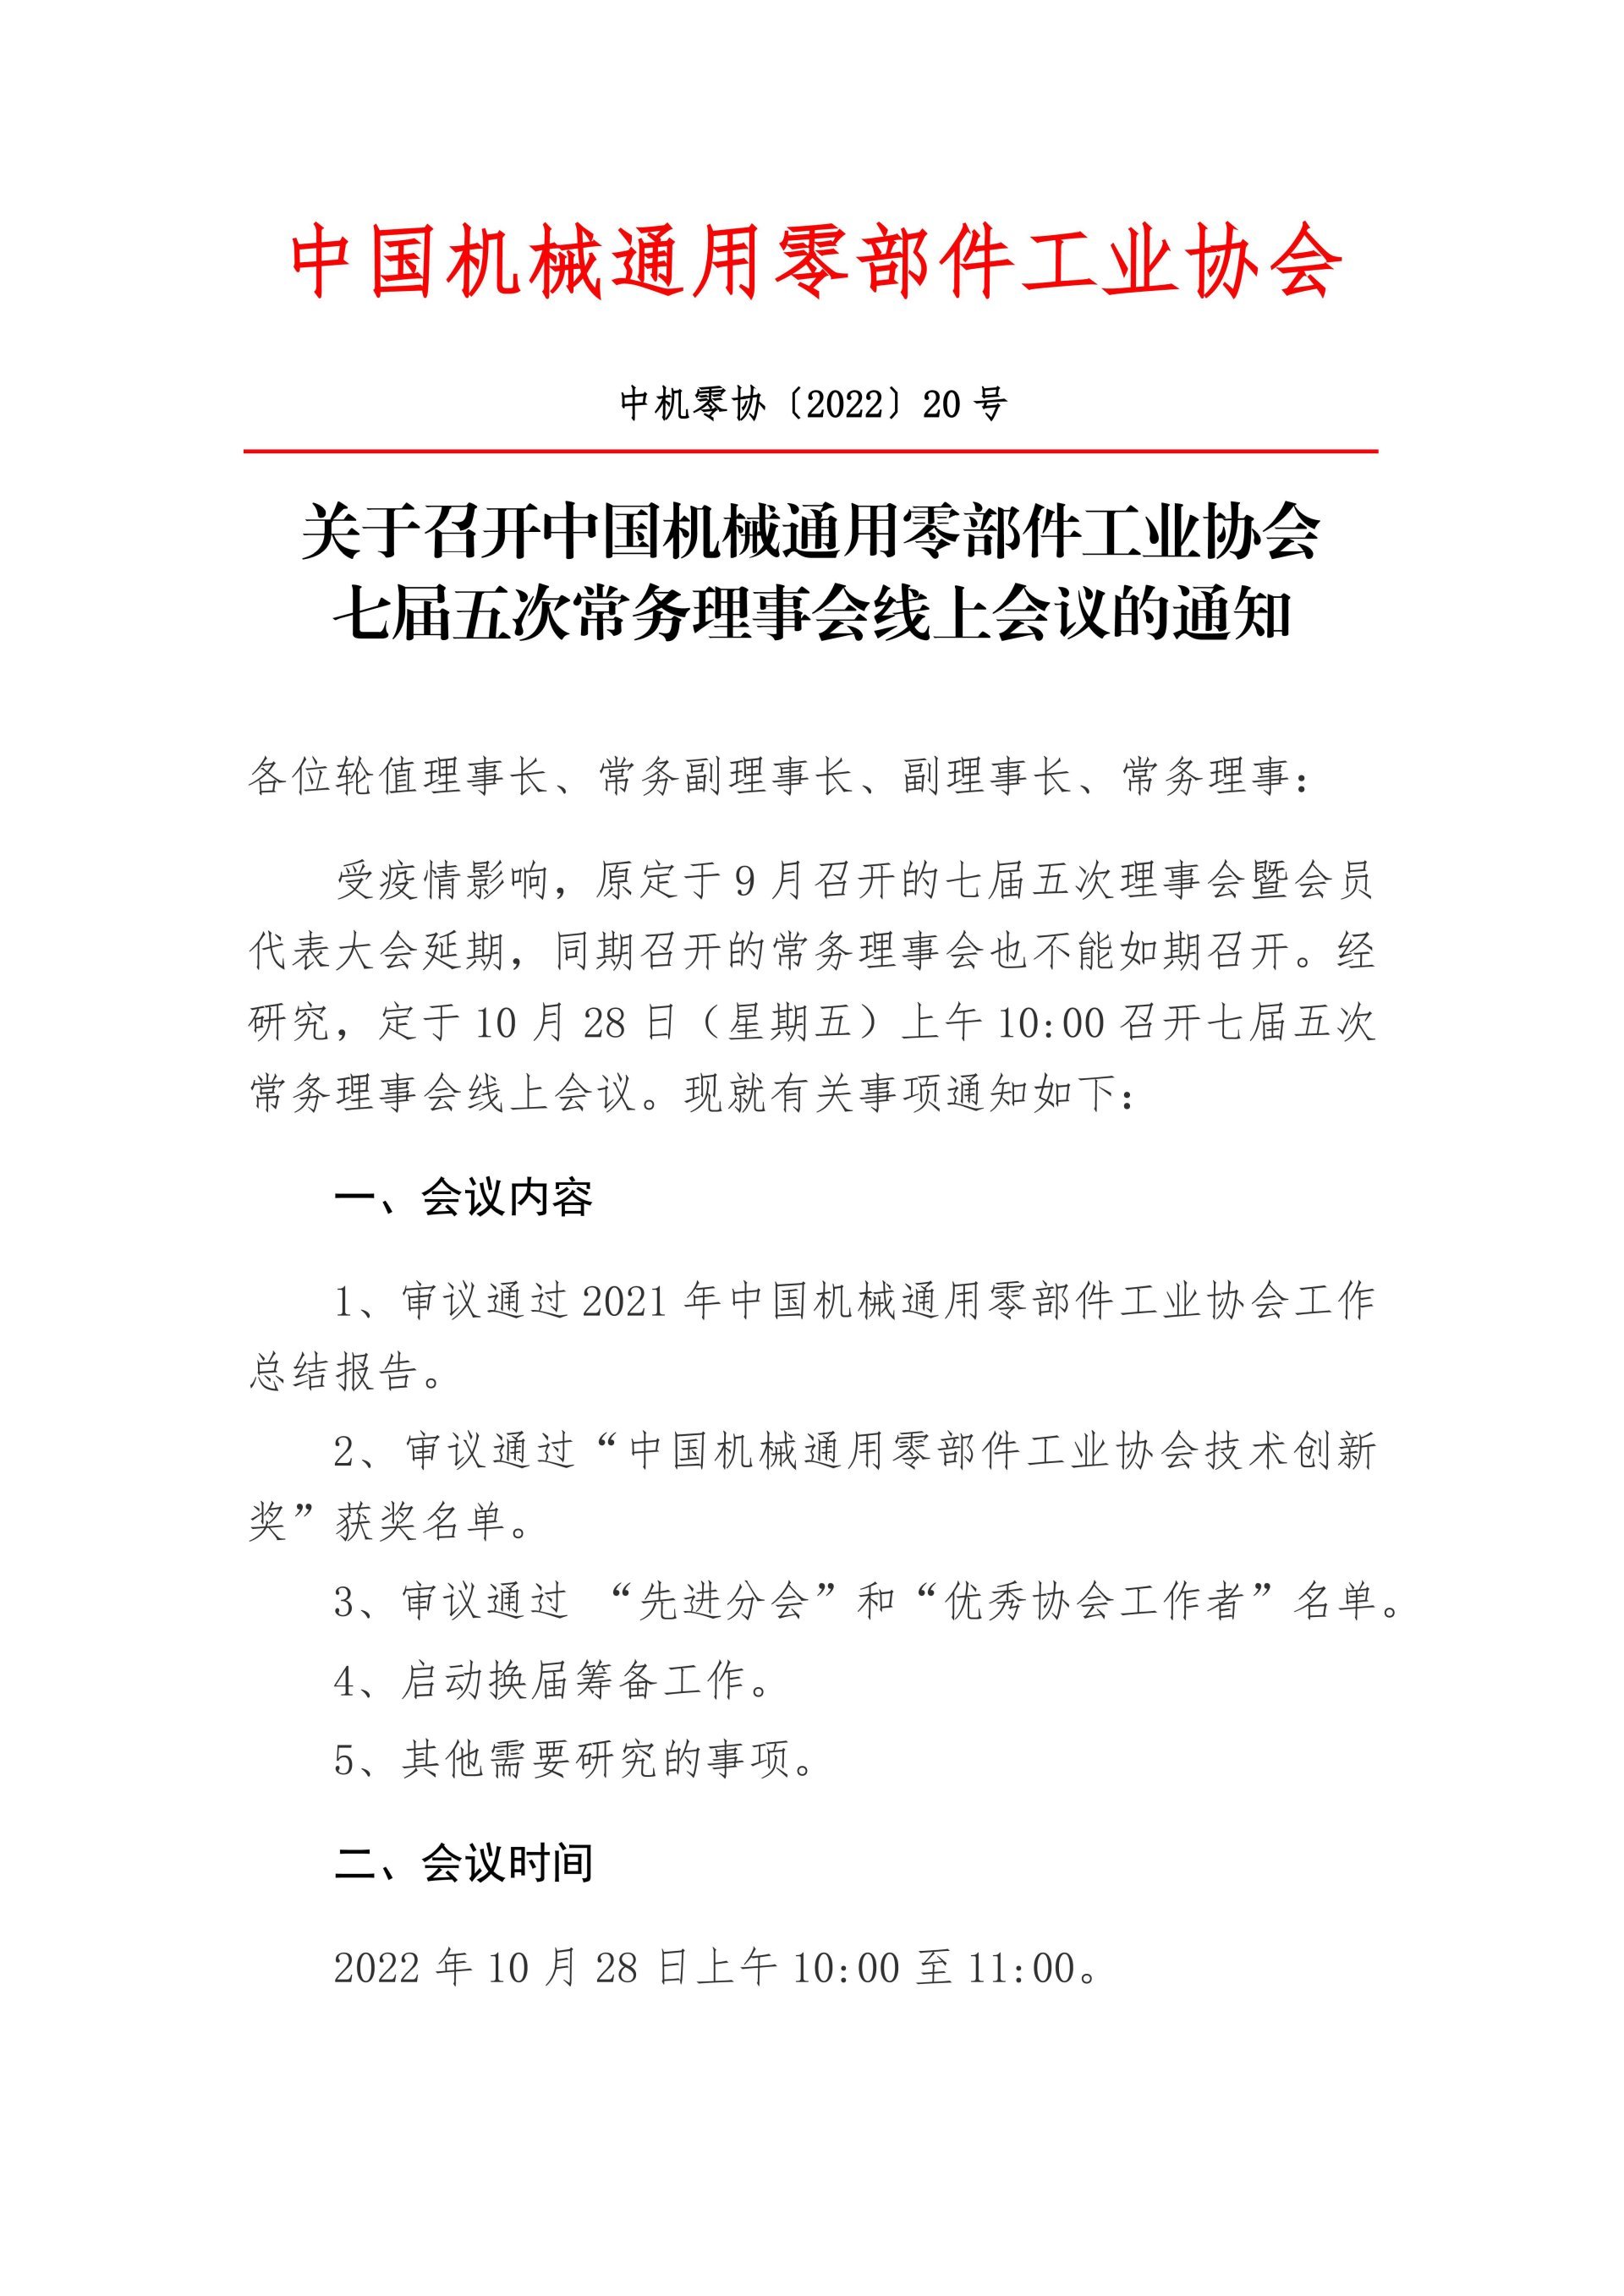 Thông báo về việc triệu tập cuộc họp trực tuyến của Hội đồng thường vụ lần thứ năm của Hiệp hội Công nghiệp Phụ tùng Máy móc Tổng hợp Trung Quốc lần thứ bảy